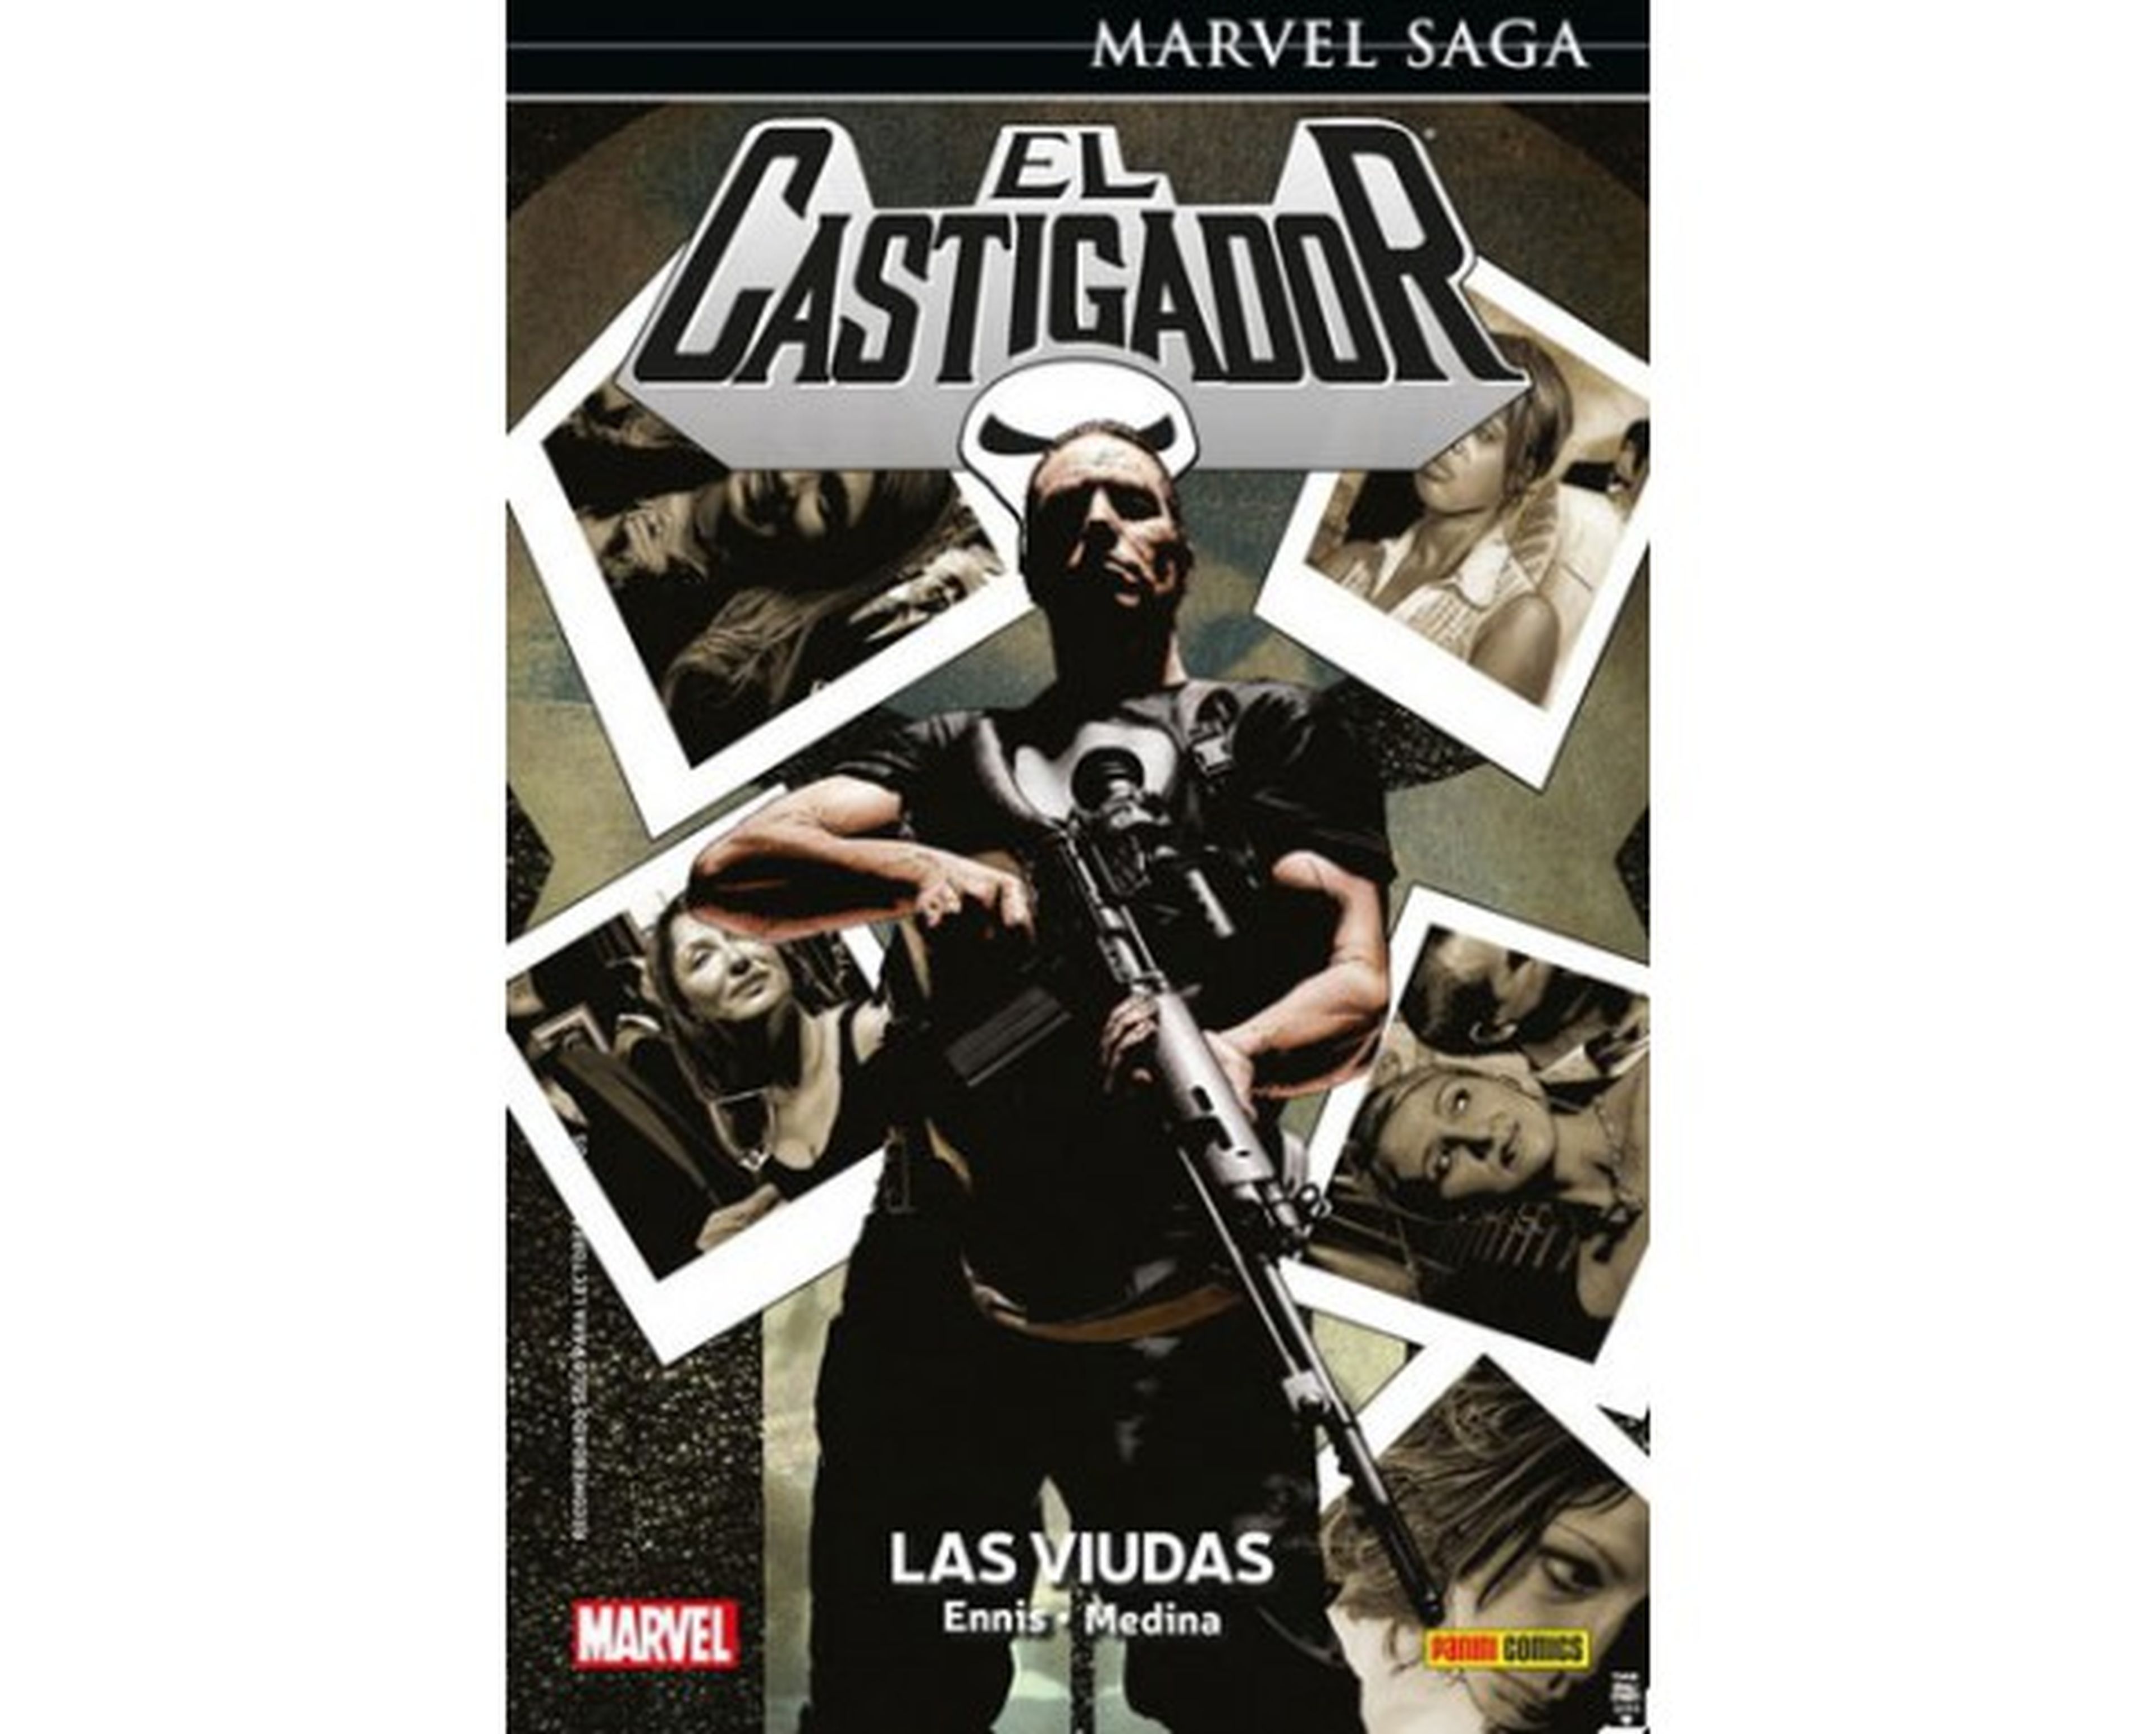 Marvel Saga El Castigador: Las Viudas